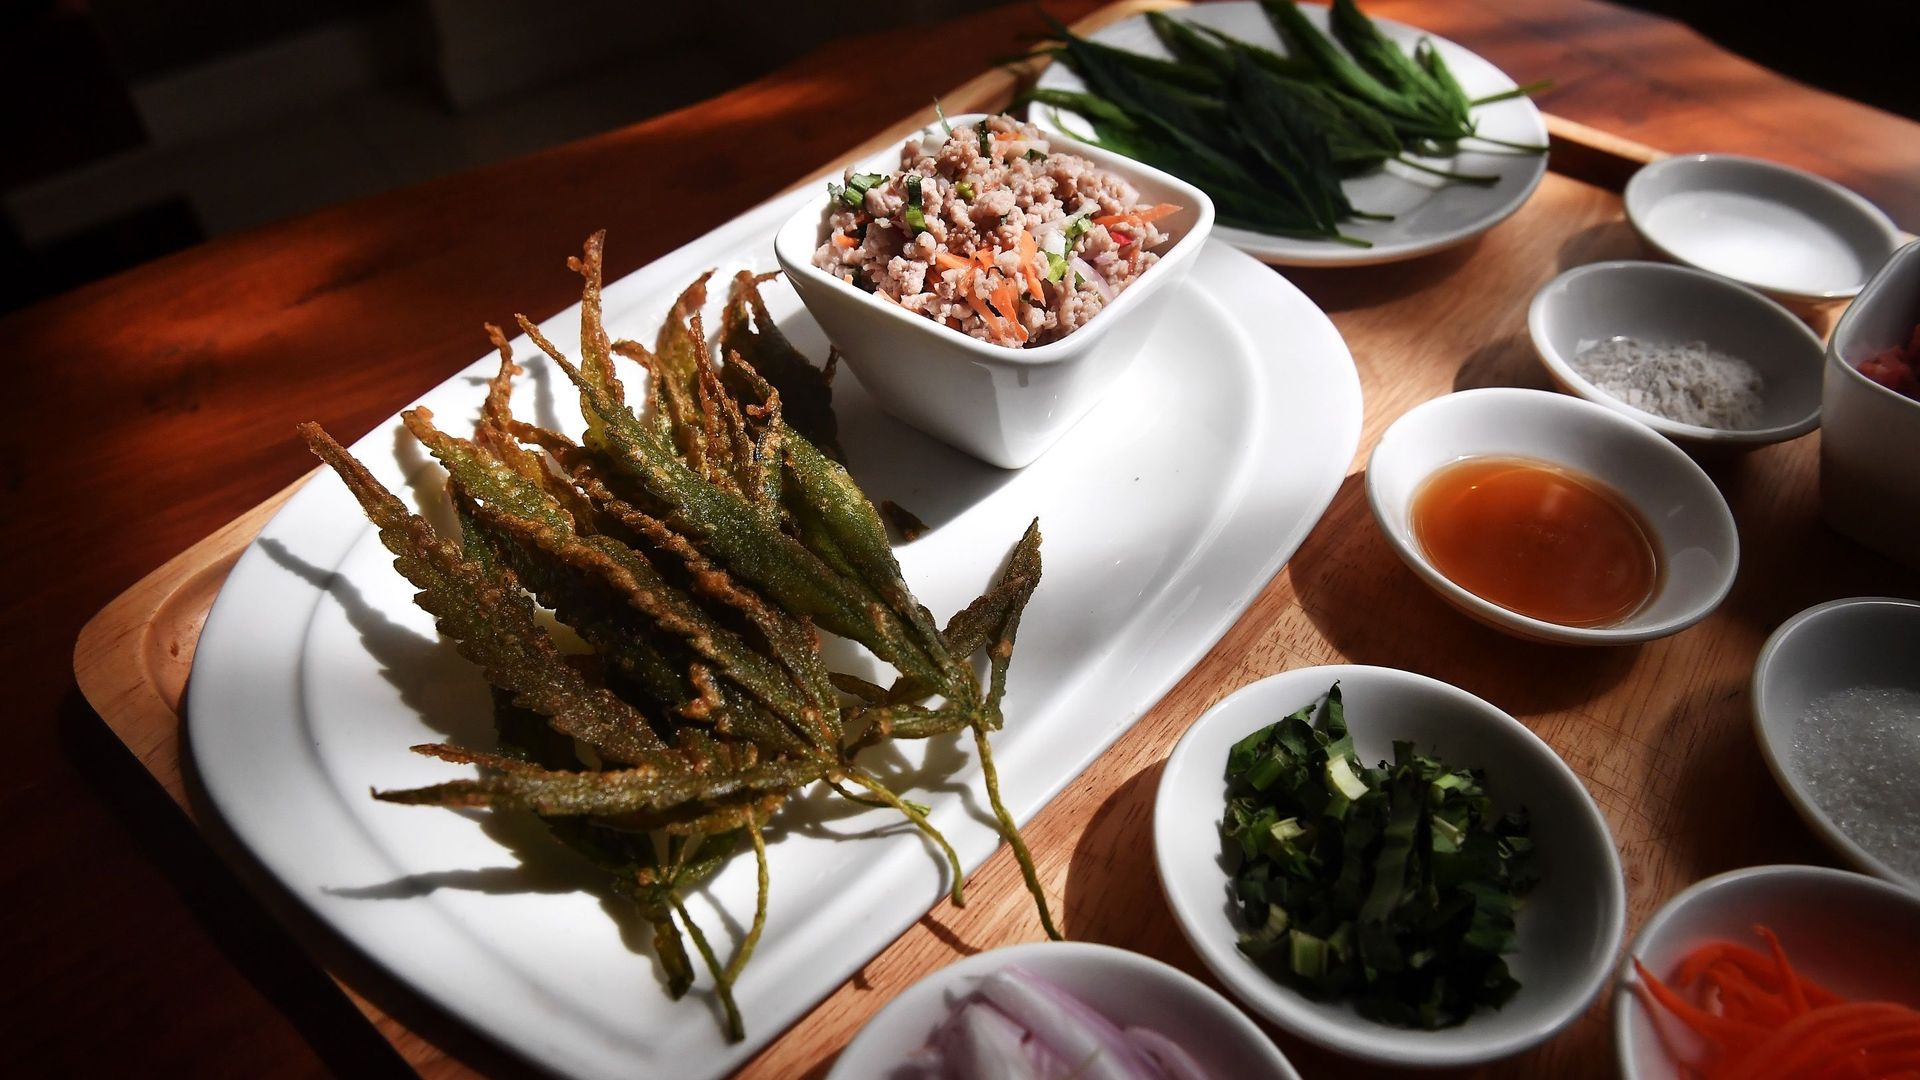 Un mois après la déclassification par la Thaïlande de la plante de cannabis, le restaurant d'un hôpital de province a révolutionné son menu pour proposer plats et boissons à l'herbe.